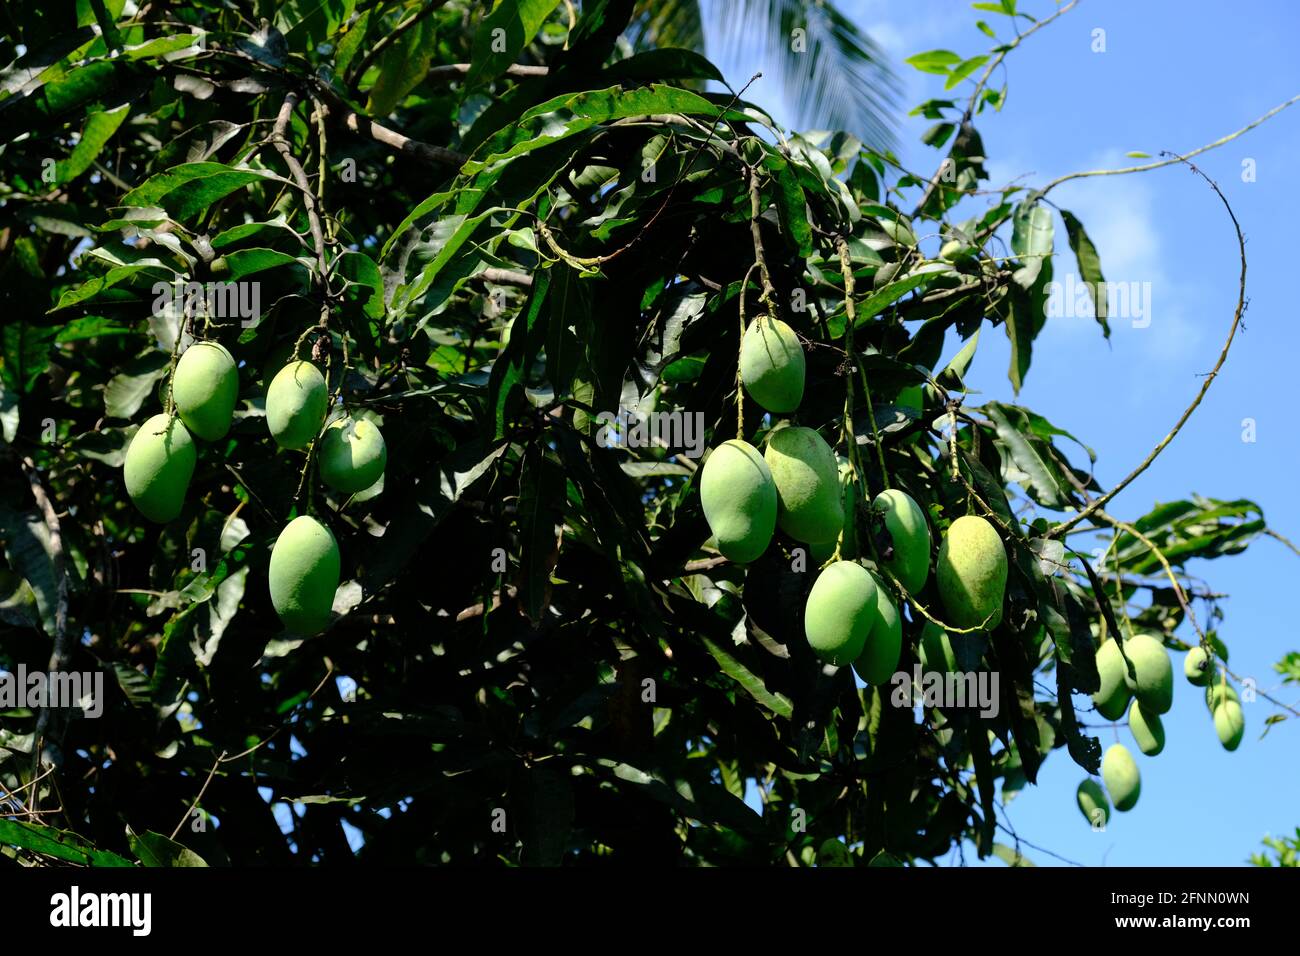 Indonesien Anambas-Inseln - Mangobaum mit Früchten - Mangifera indica Stockfoto